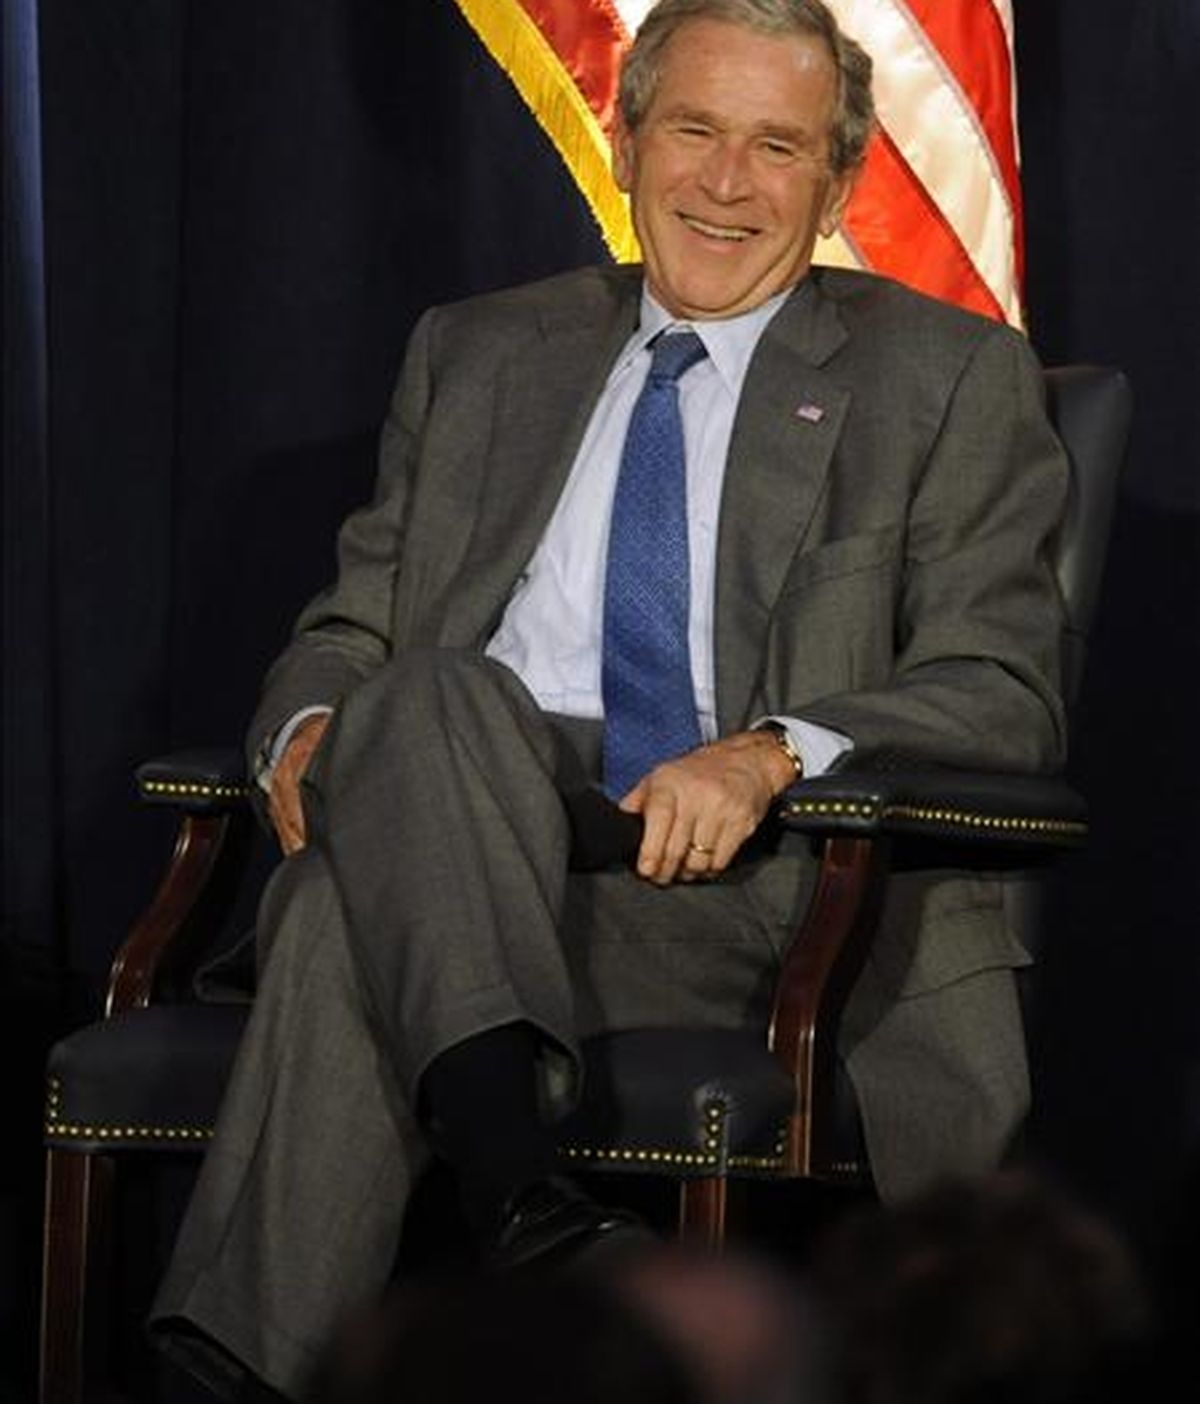 El ex presidente Bush, que durante sus ocho años de mandato fue criticado por las dos guerras abiertas en Irak y Afganistán, y crisis como la desatada por la mala gestión tras el huracán Katrina, ha logrado el 47 por ciento del apoyo. EFE/Archivo